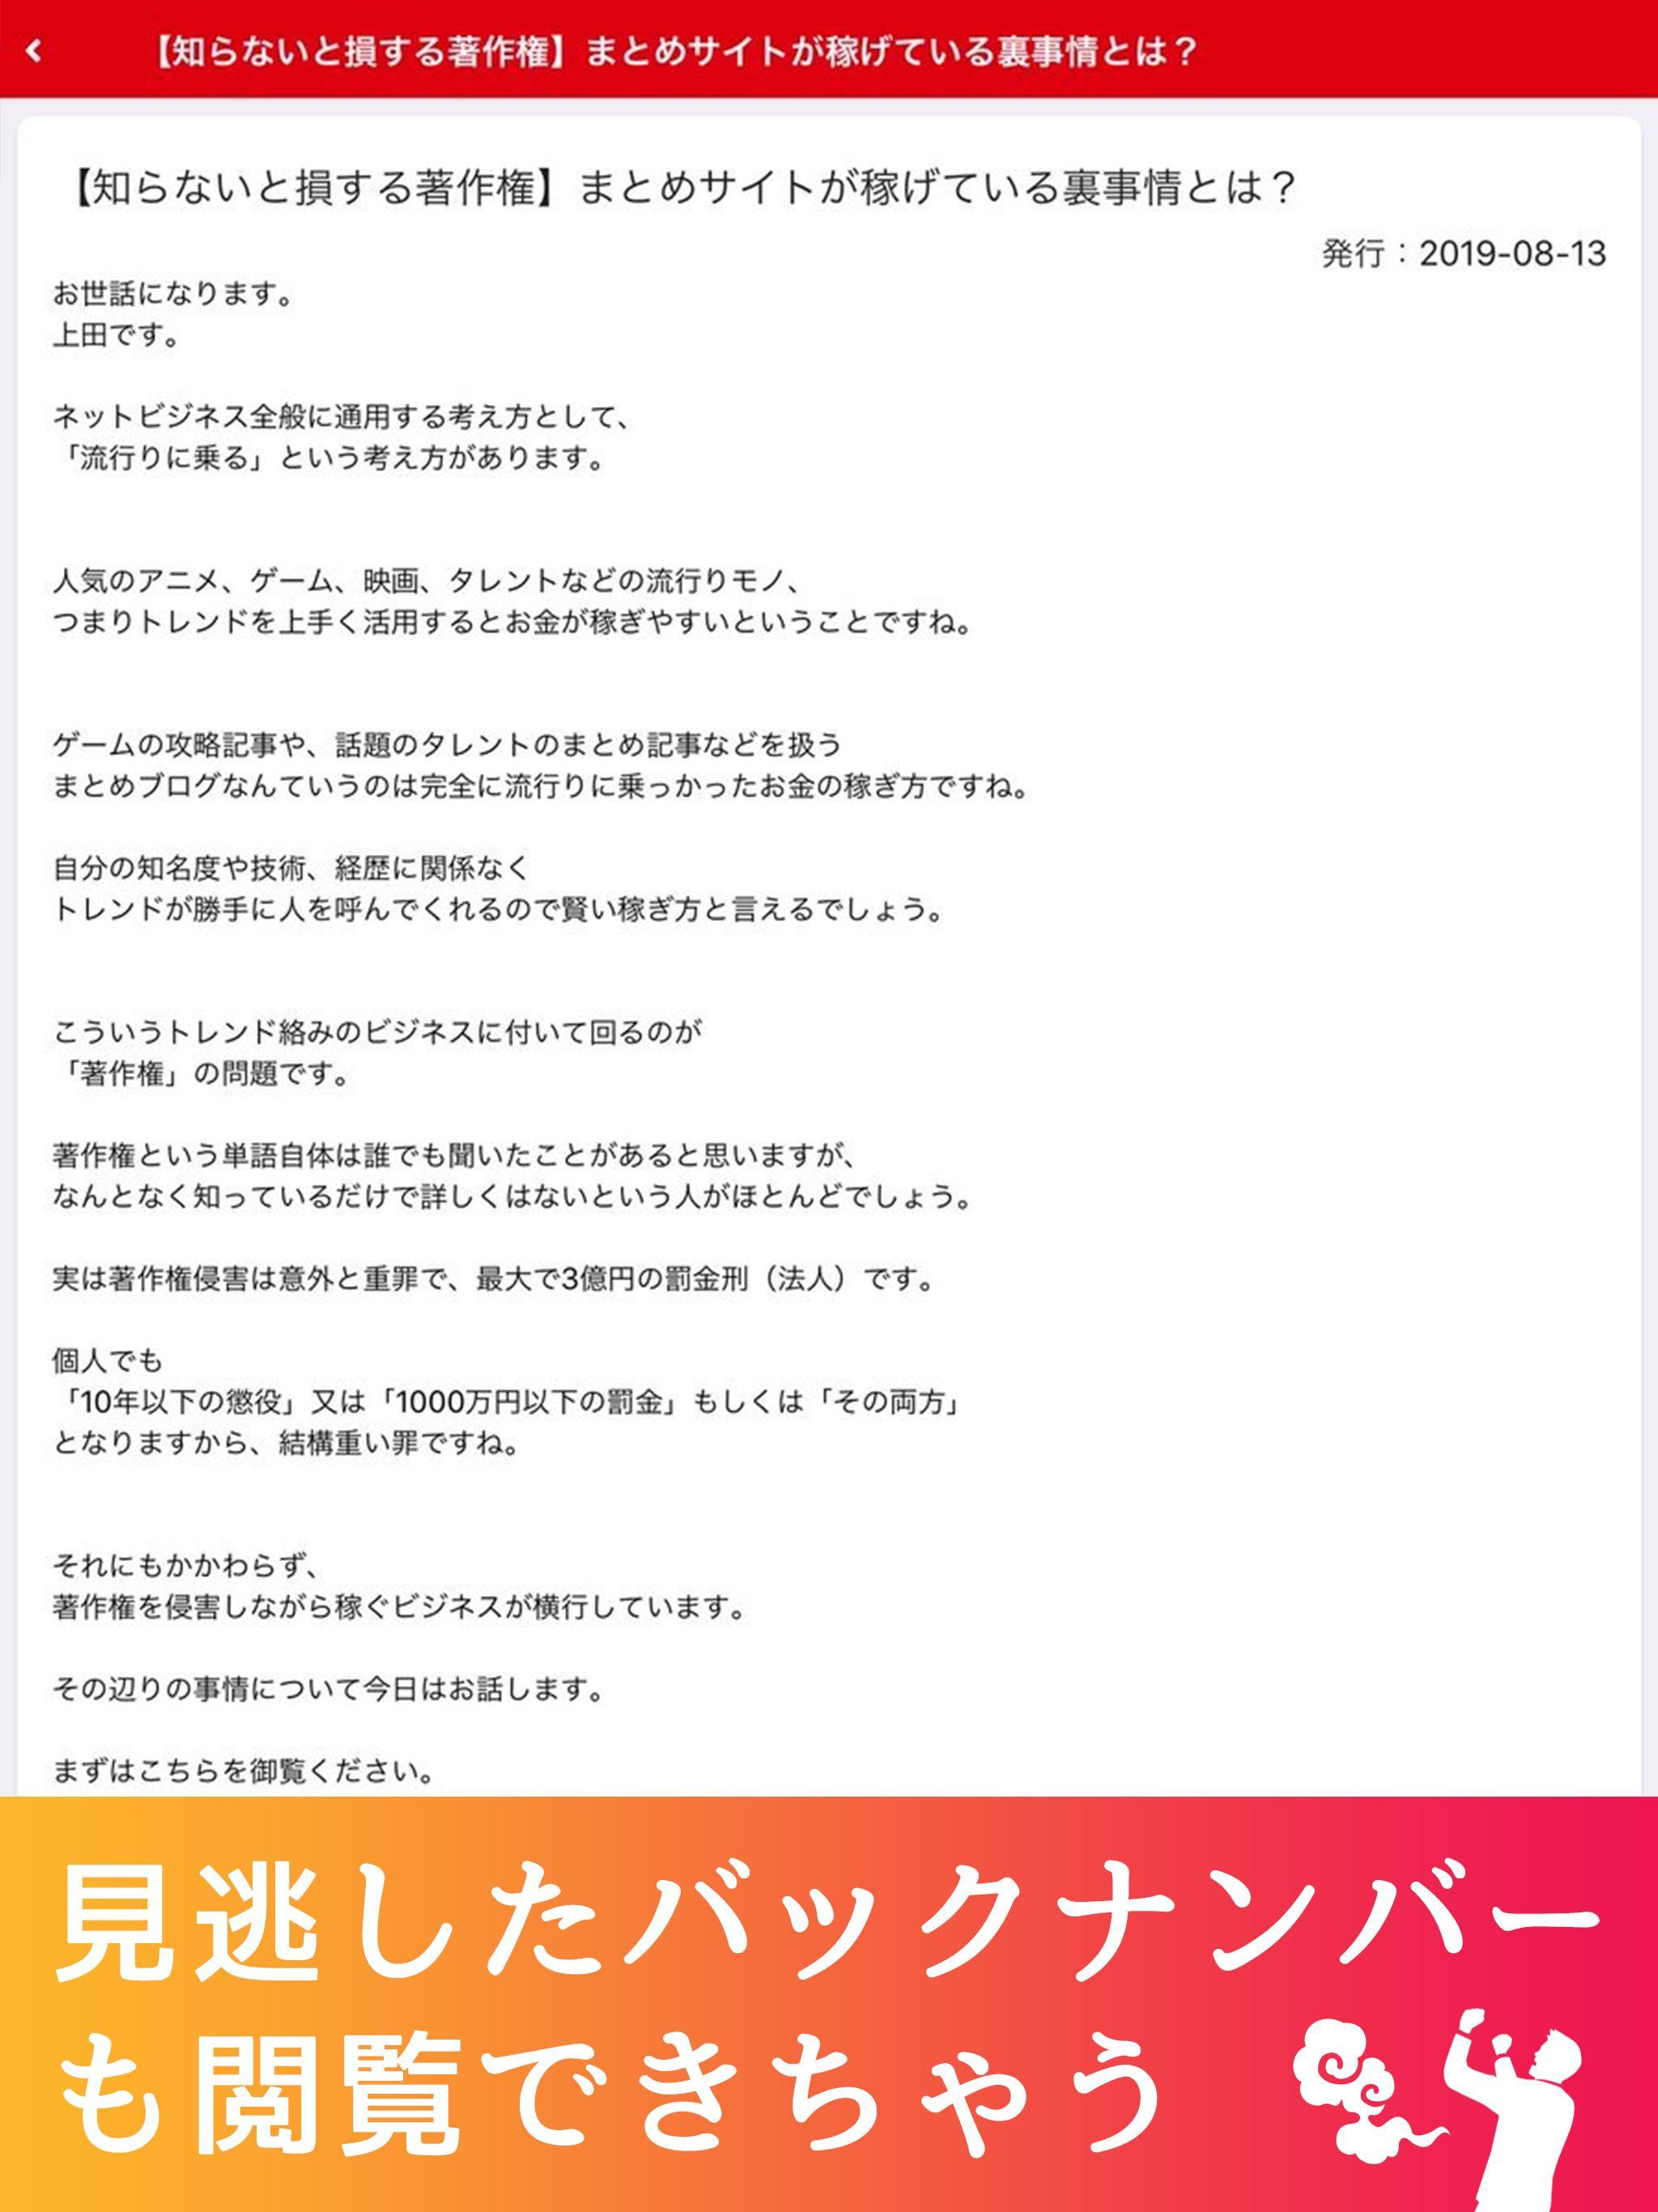 上田幸司公式アプリ 1.4.0 Screenshot 10